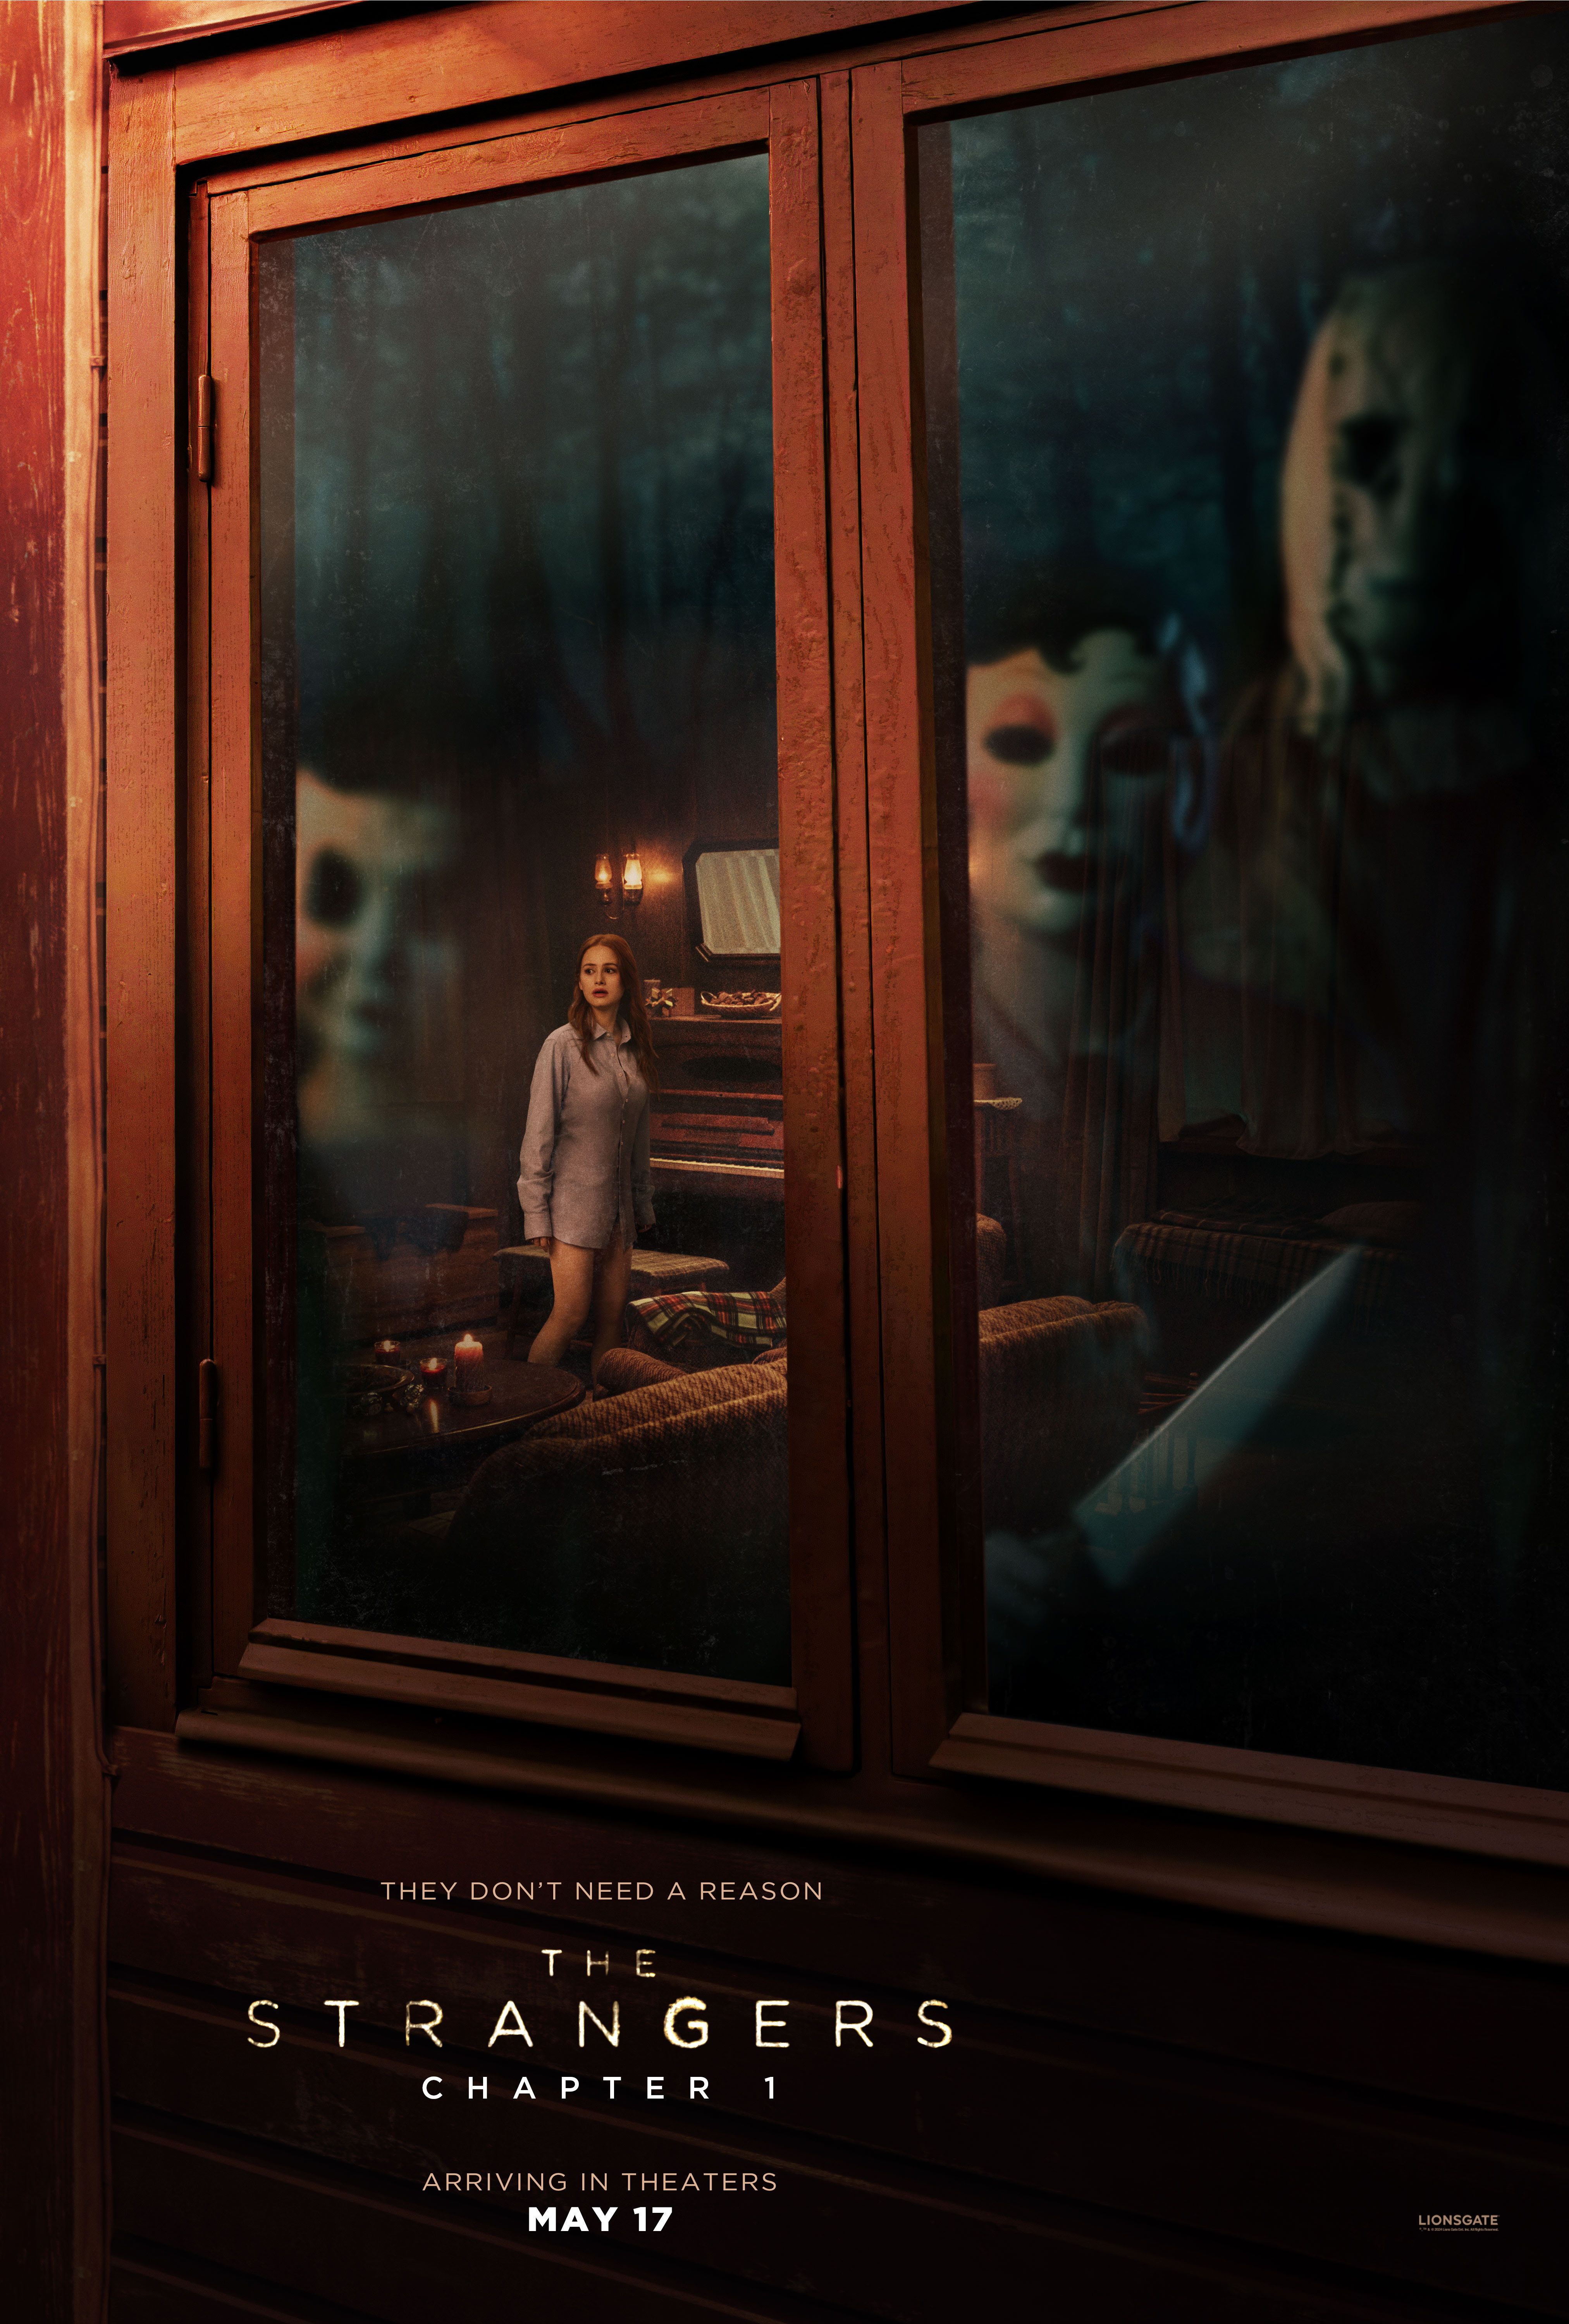 Affiche du chapitre 1 de The Strangers montrant trois personnages masqués regardant dans une fenêtre